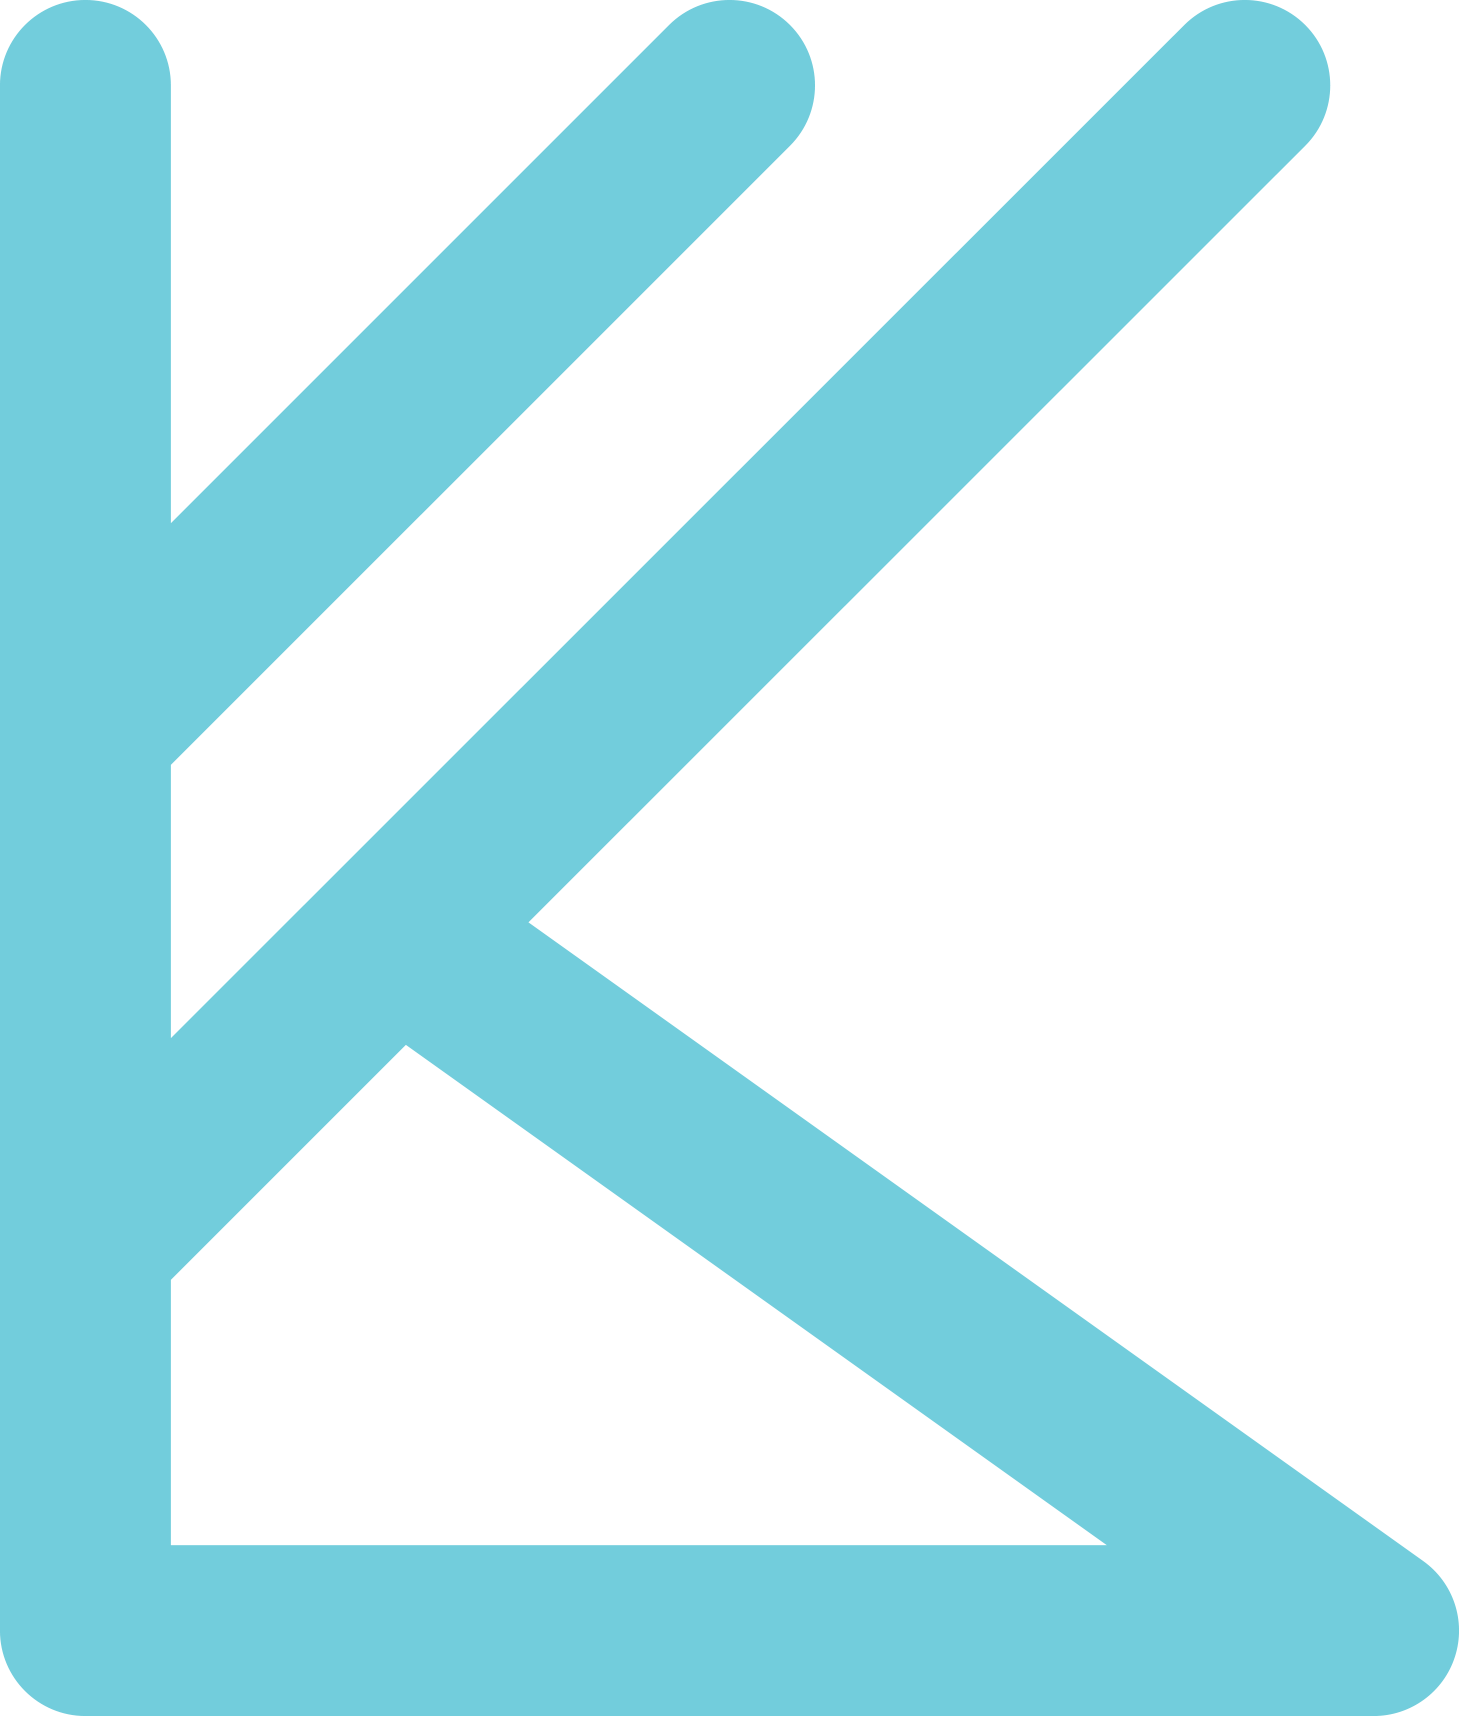 Kuben logo